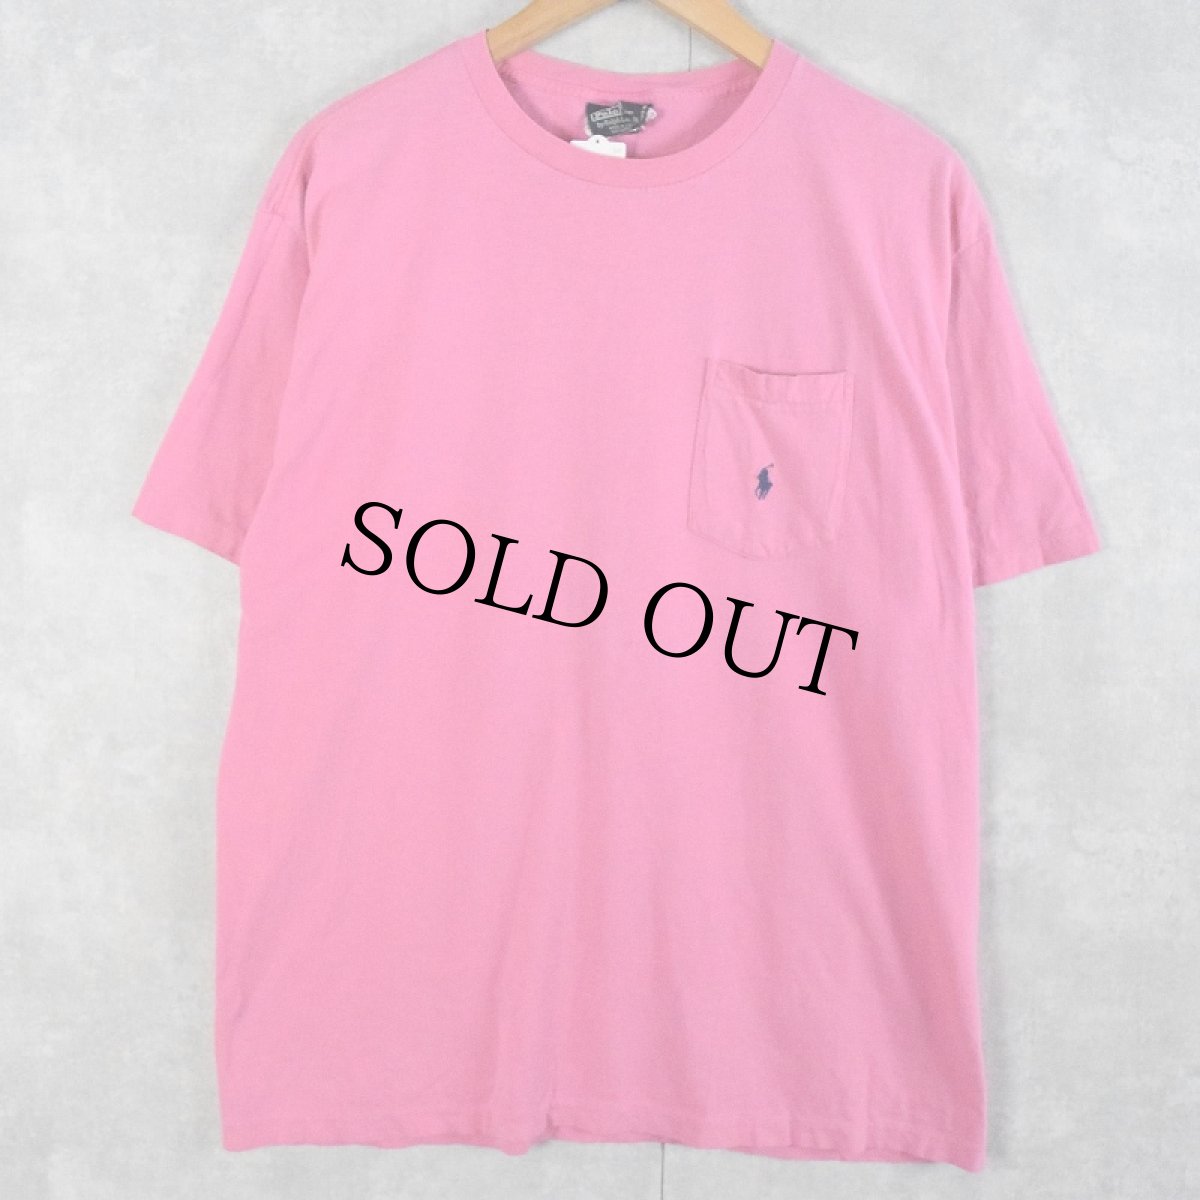 画像1: 90's POLO Ralph Lauren USA製 ロゴ刺繍 ポケットTシャツ M (1)